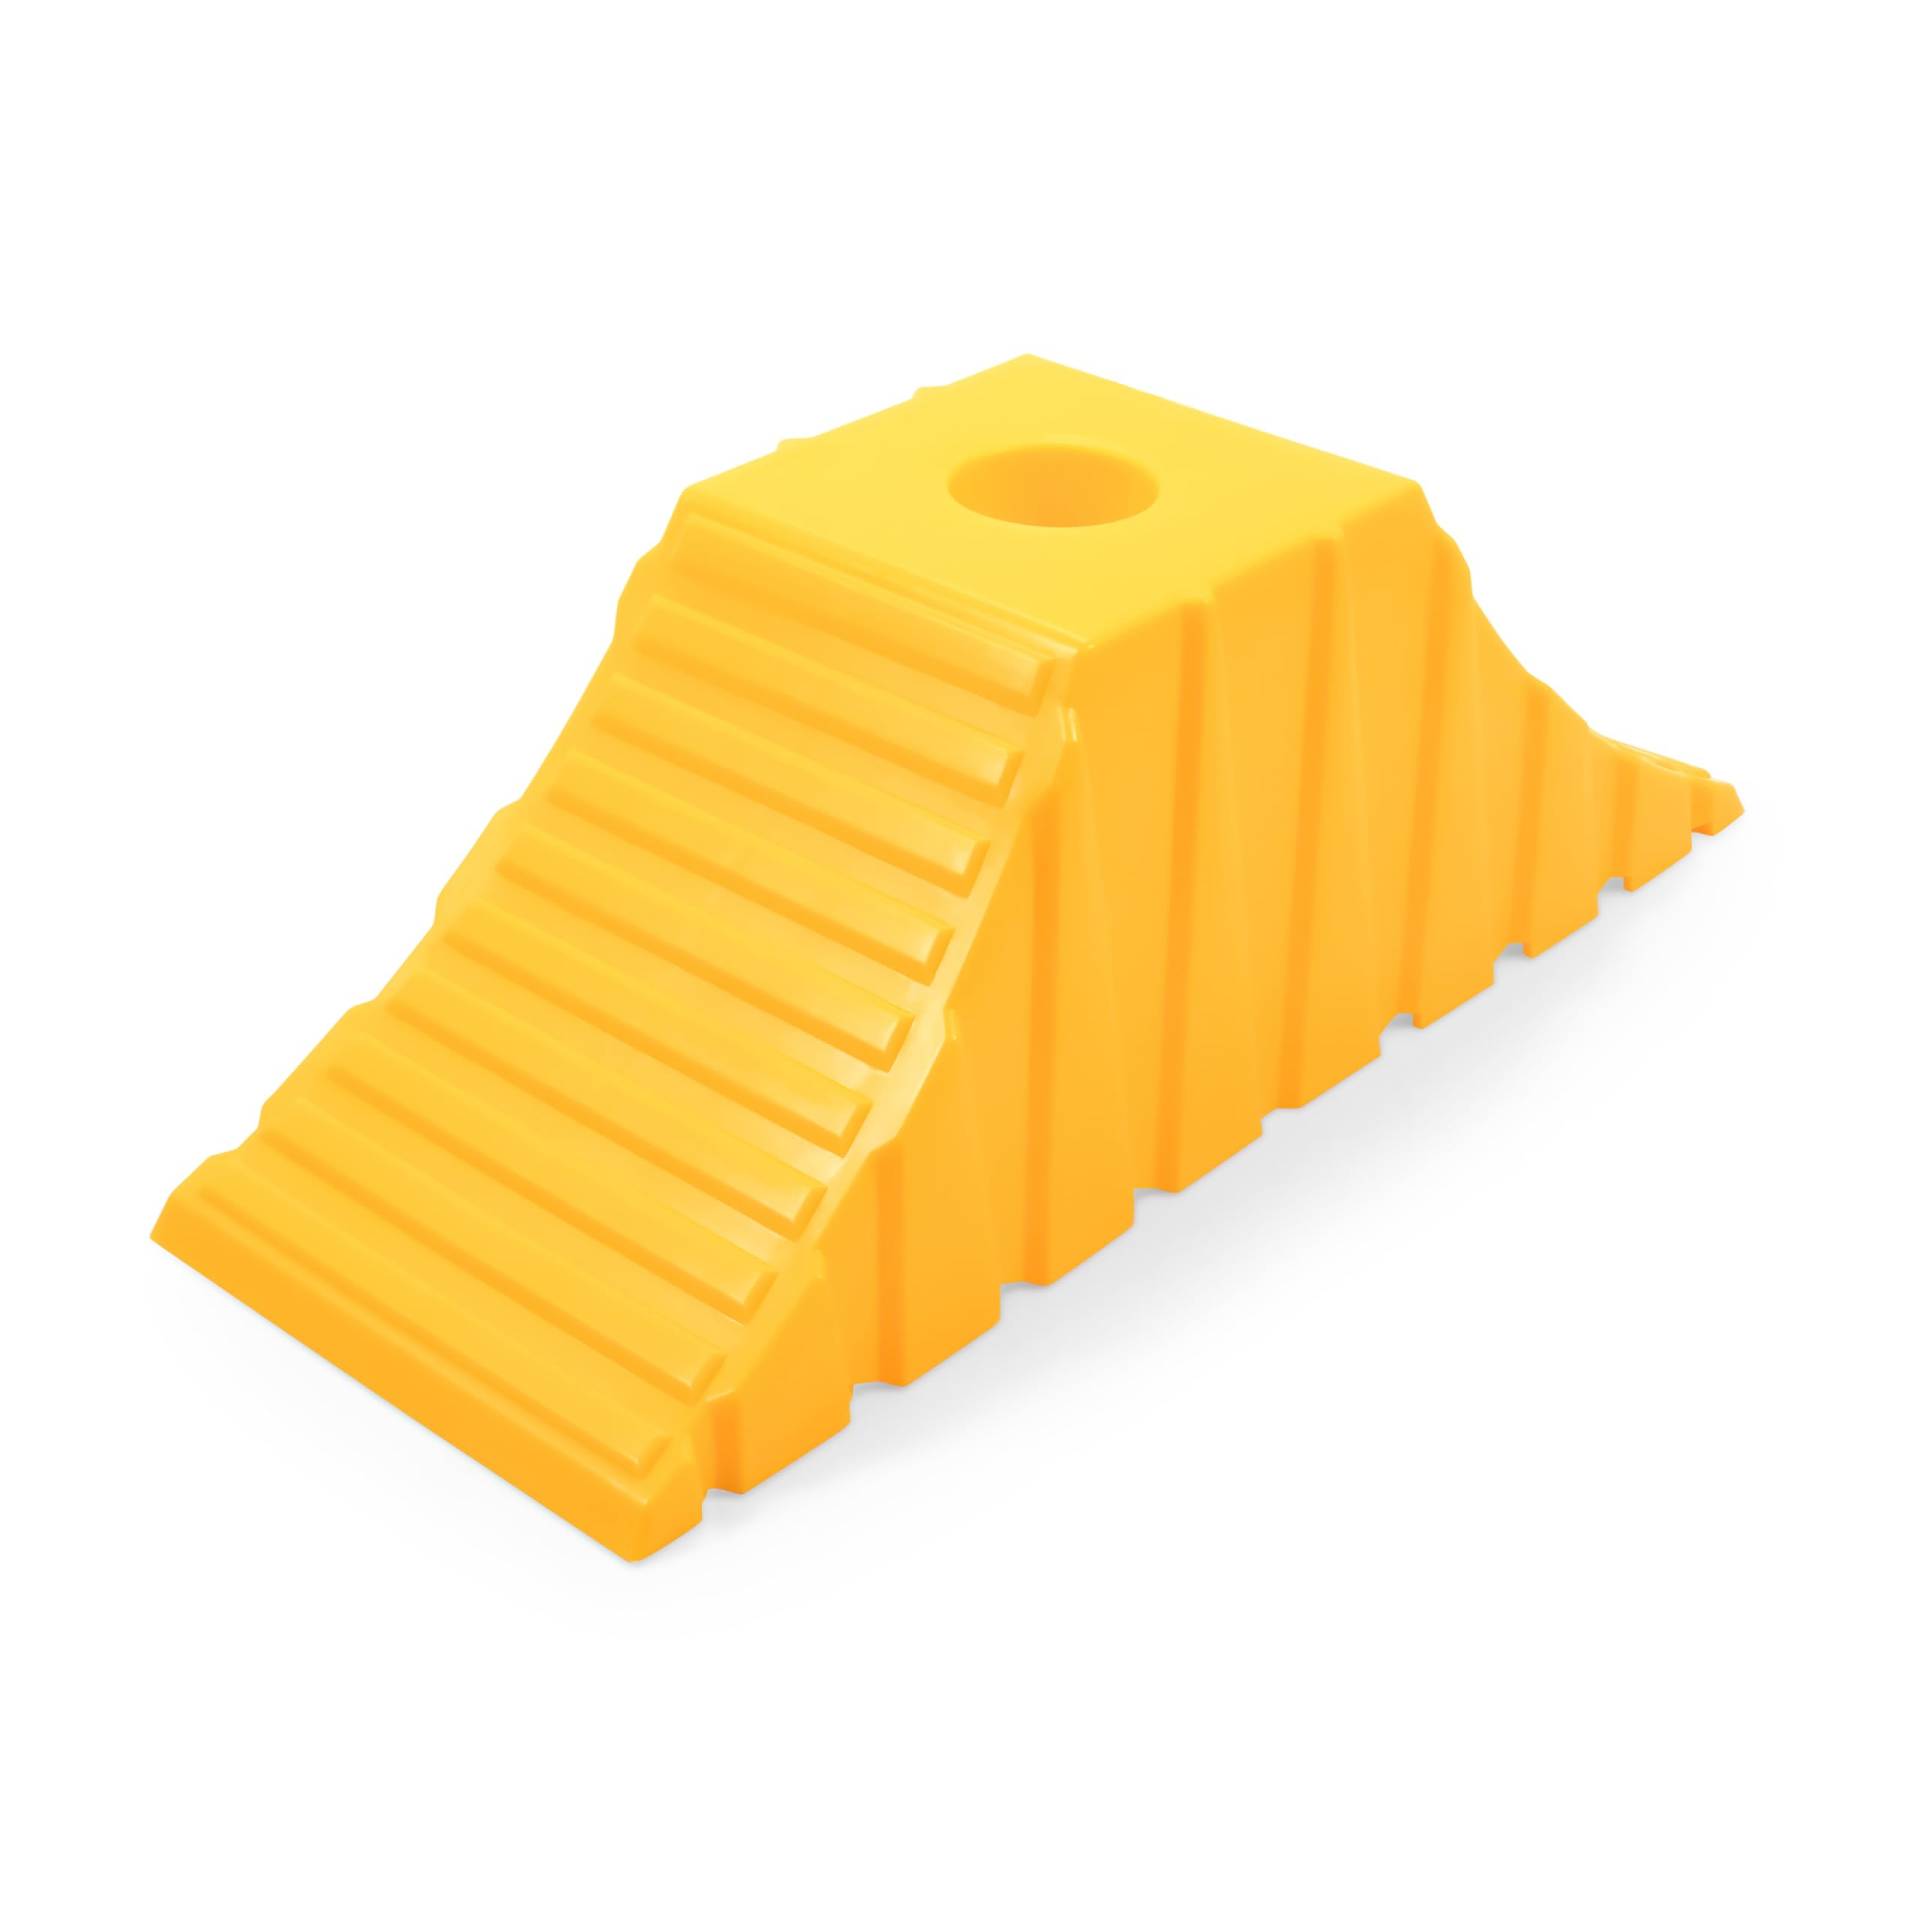 Camco Tandem Unterlegkeil gelb, 1 Stück, 44435 von Camco